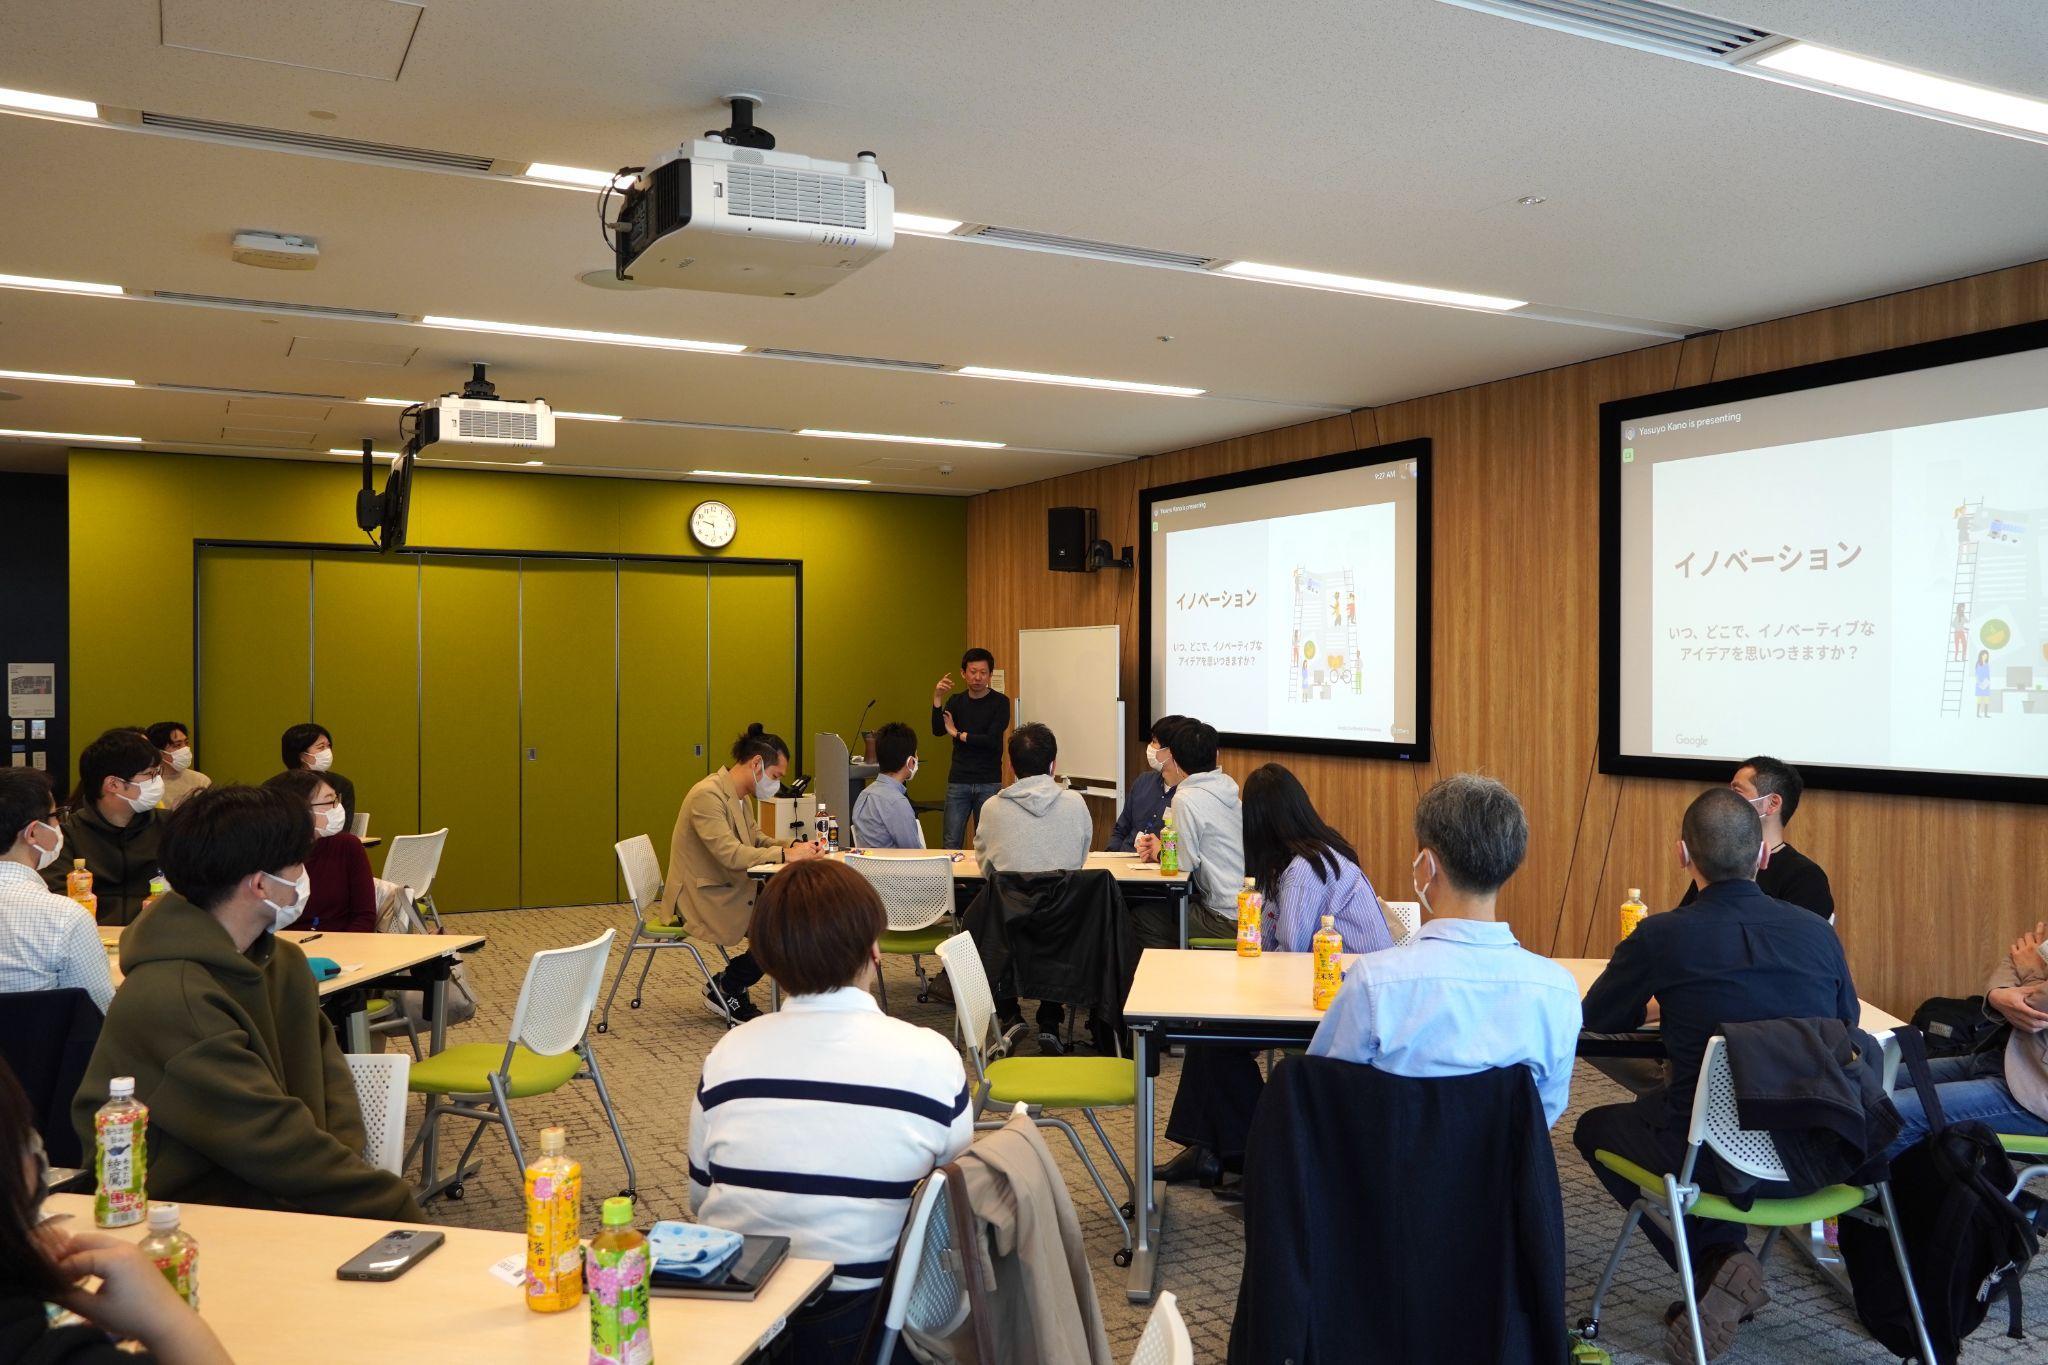 駒澤大学の職員がグーグル・クラウド・ジャパン合同会社による「デザイン思考」ワークショップ（CSI:Lab）を受講 --「DX」と「Diversity」の推進に向けて開催